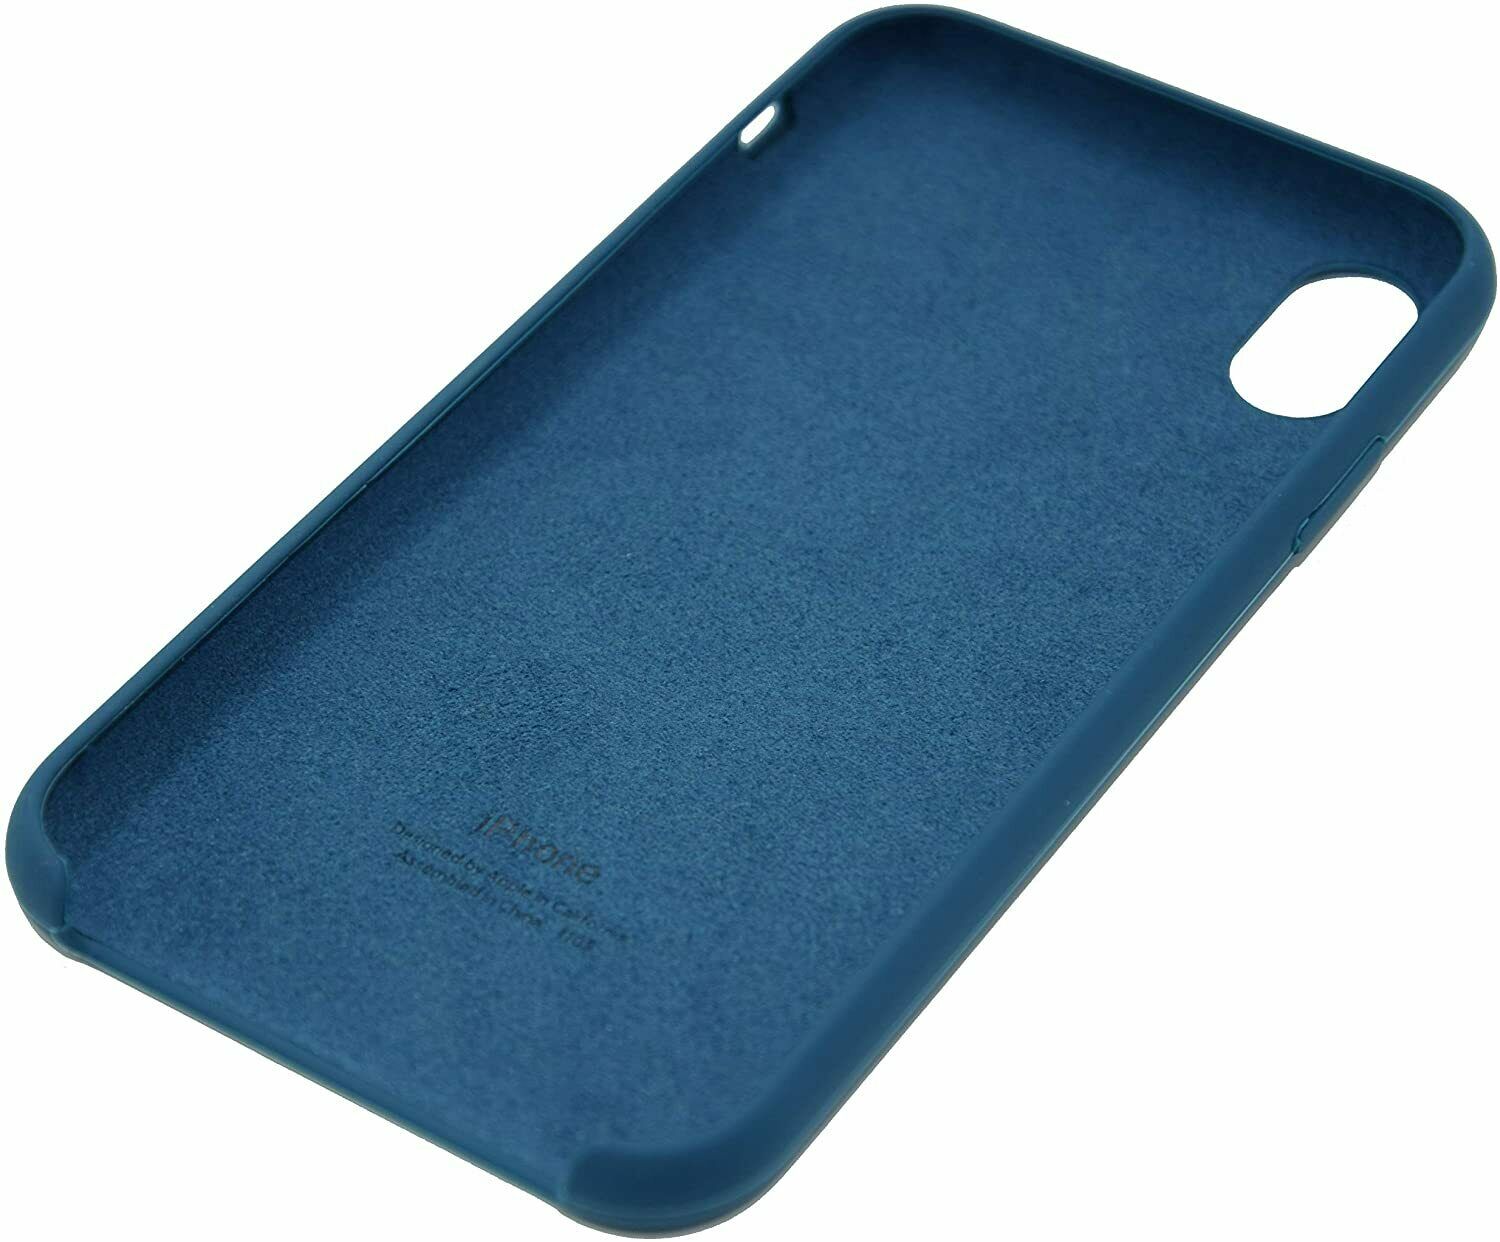 Funda de silicona para el iPhone 11 Pro Max - Azul noche - Apple (ES)